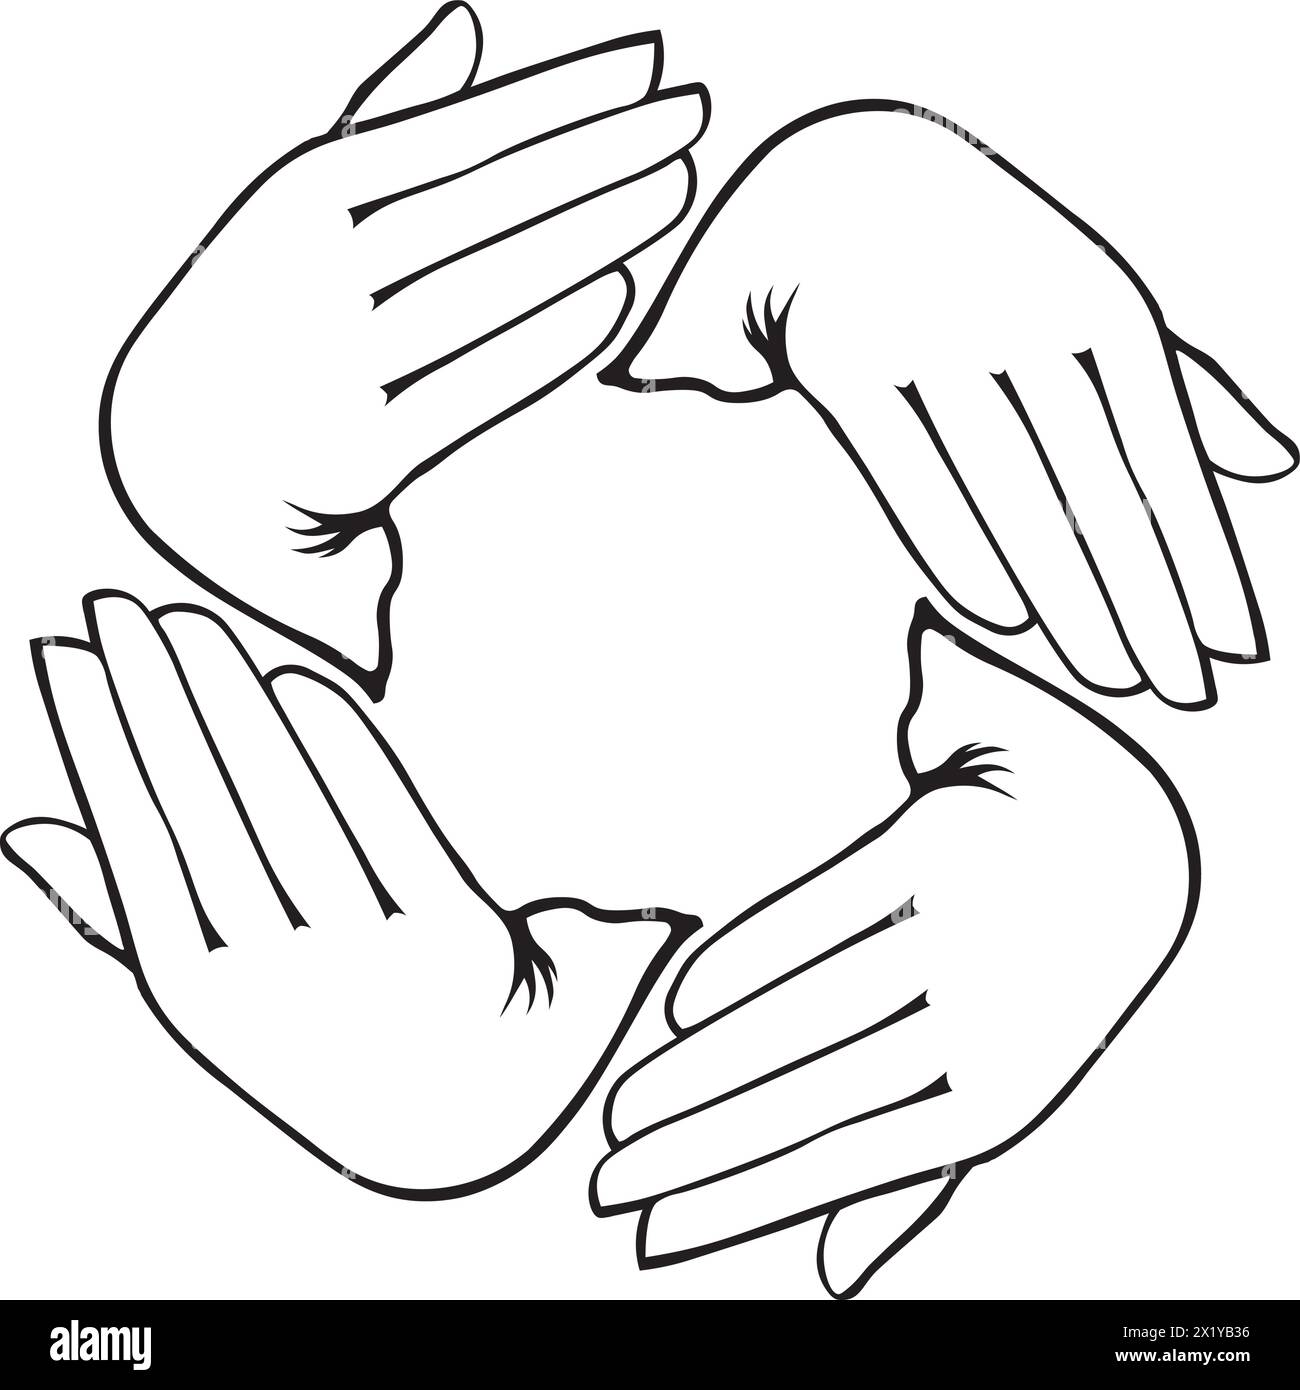 mani disposte in forma circolare che suggeriscono movimento e interazione all'interno di una comunità o tra individui Illustrazione Vettoriale